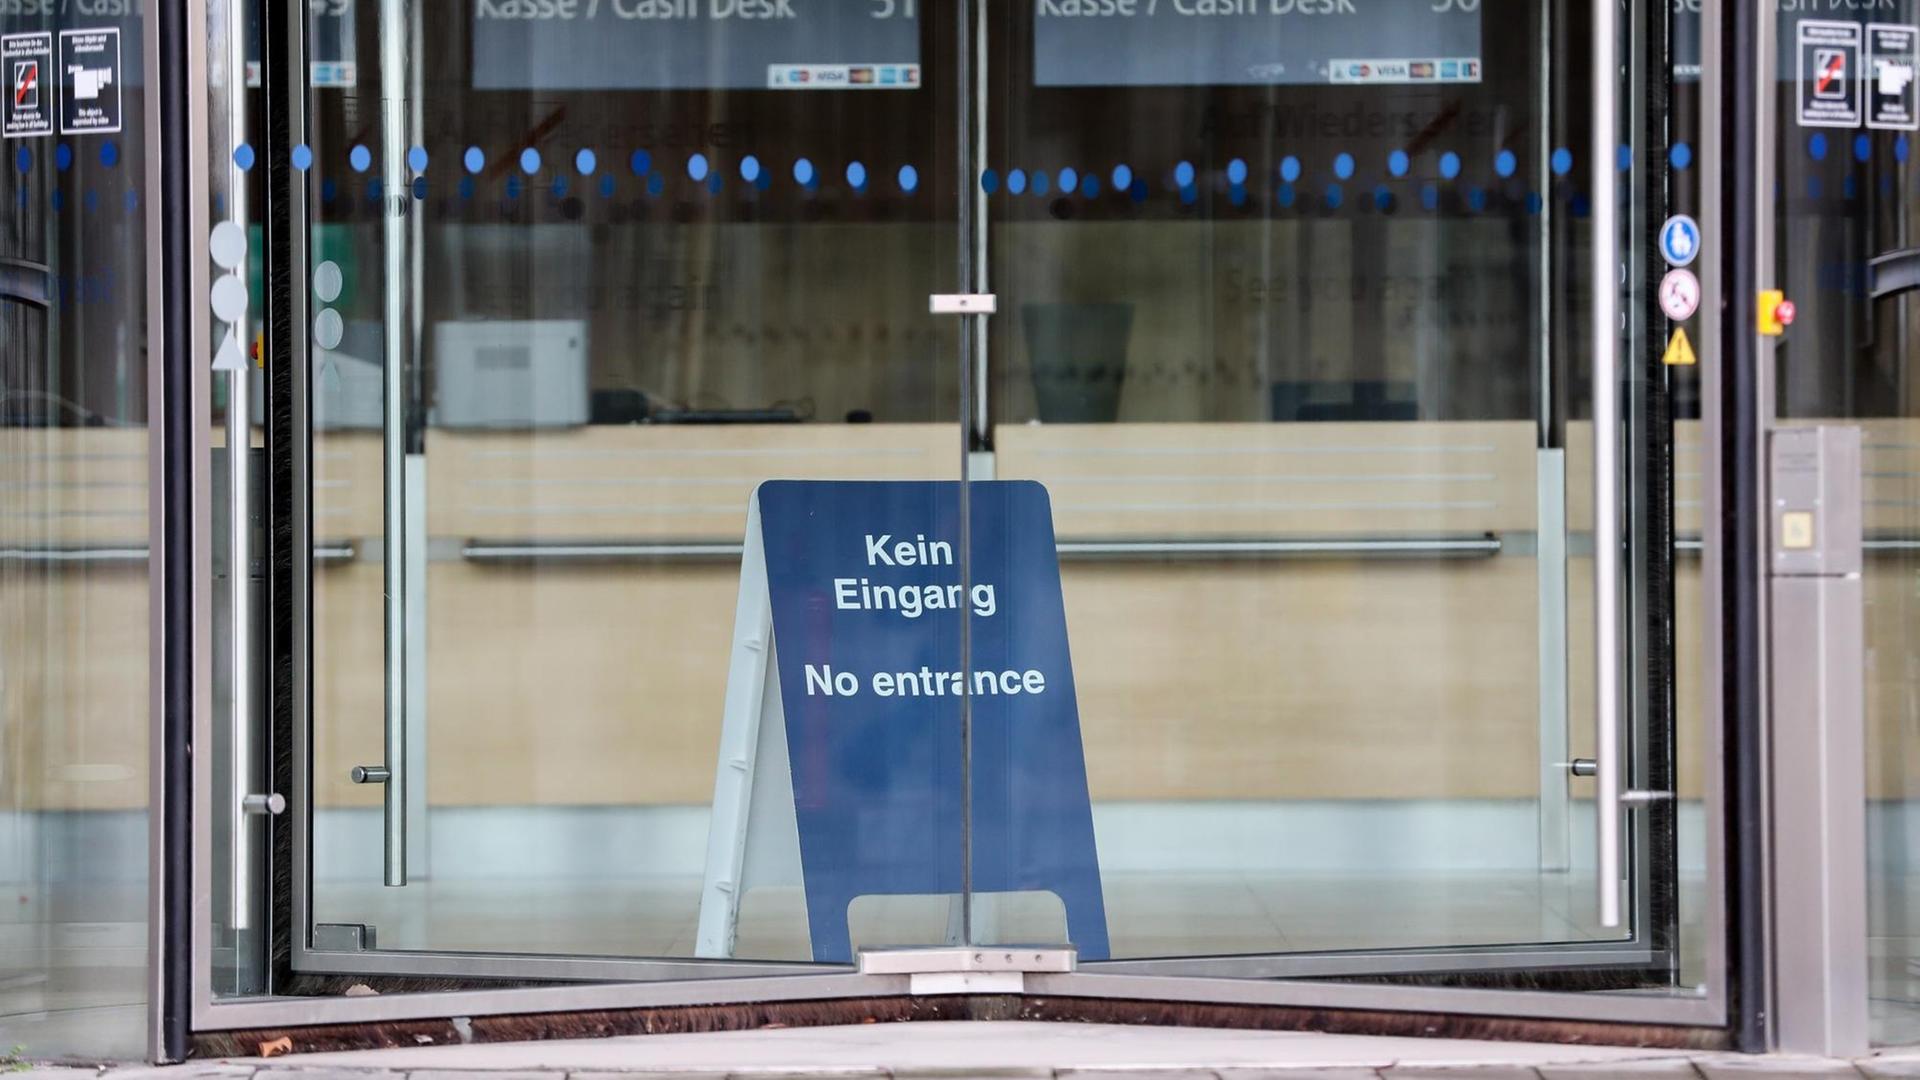 Durch eine Drehtür ist ein blaues Aufstellschild mit der Aufschrift 'Kein Eingang, No entrance' zu sehen. Im Hintergrund sind die leeren Kassenplätze.